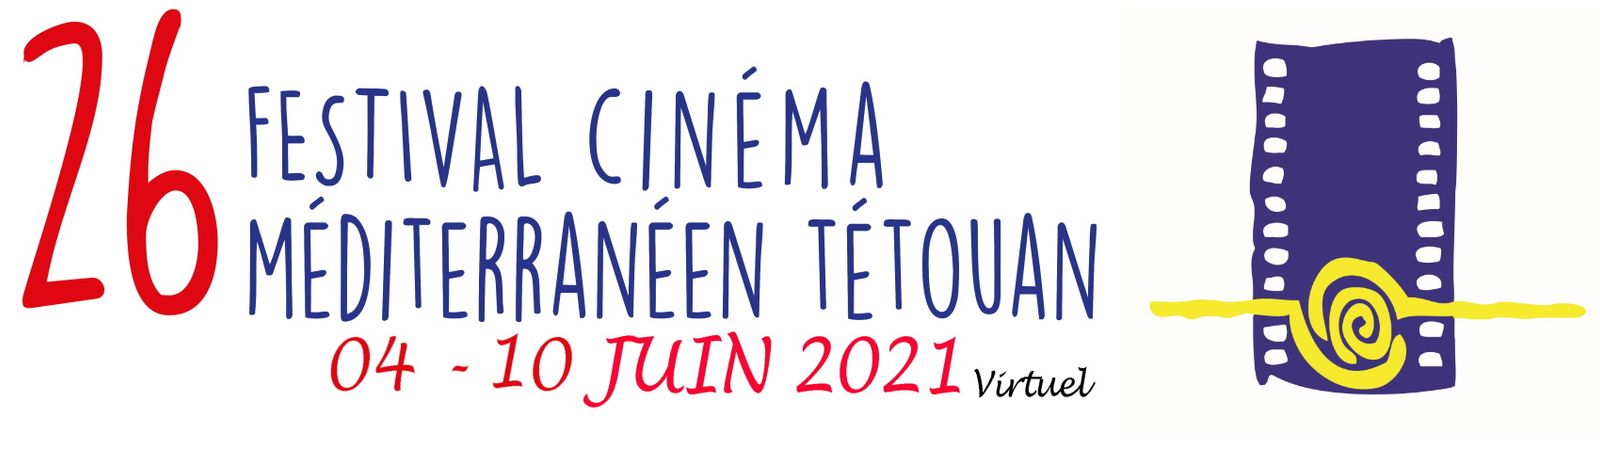 شعار مهرجان تطوان لسينما البحر المتوسط في المغرب 2021 - festivaltetouan.org/